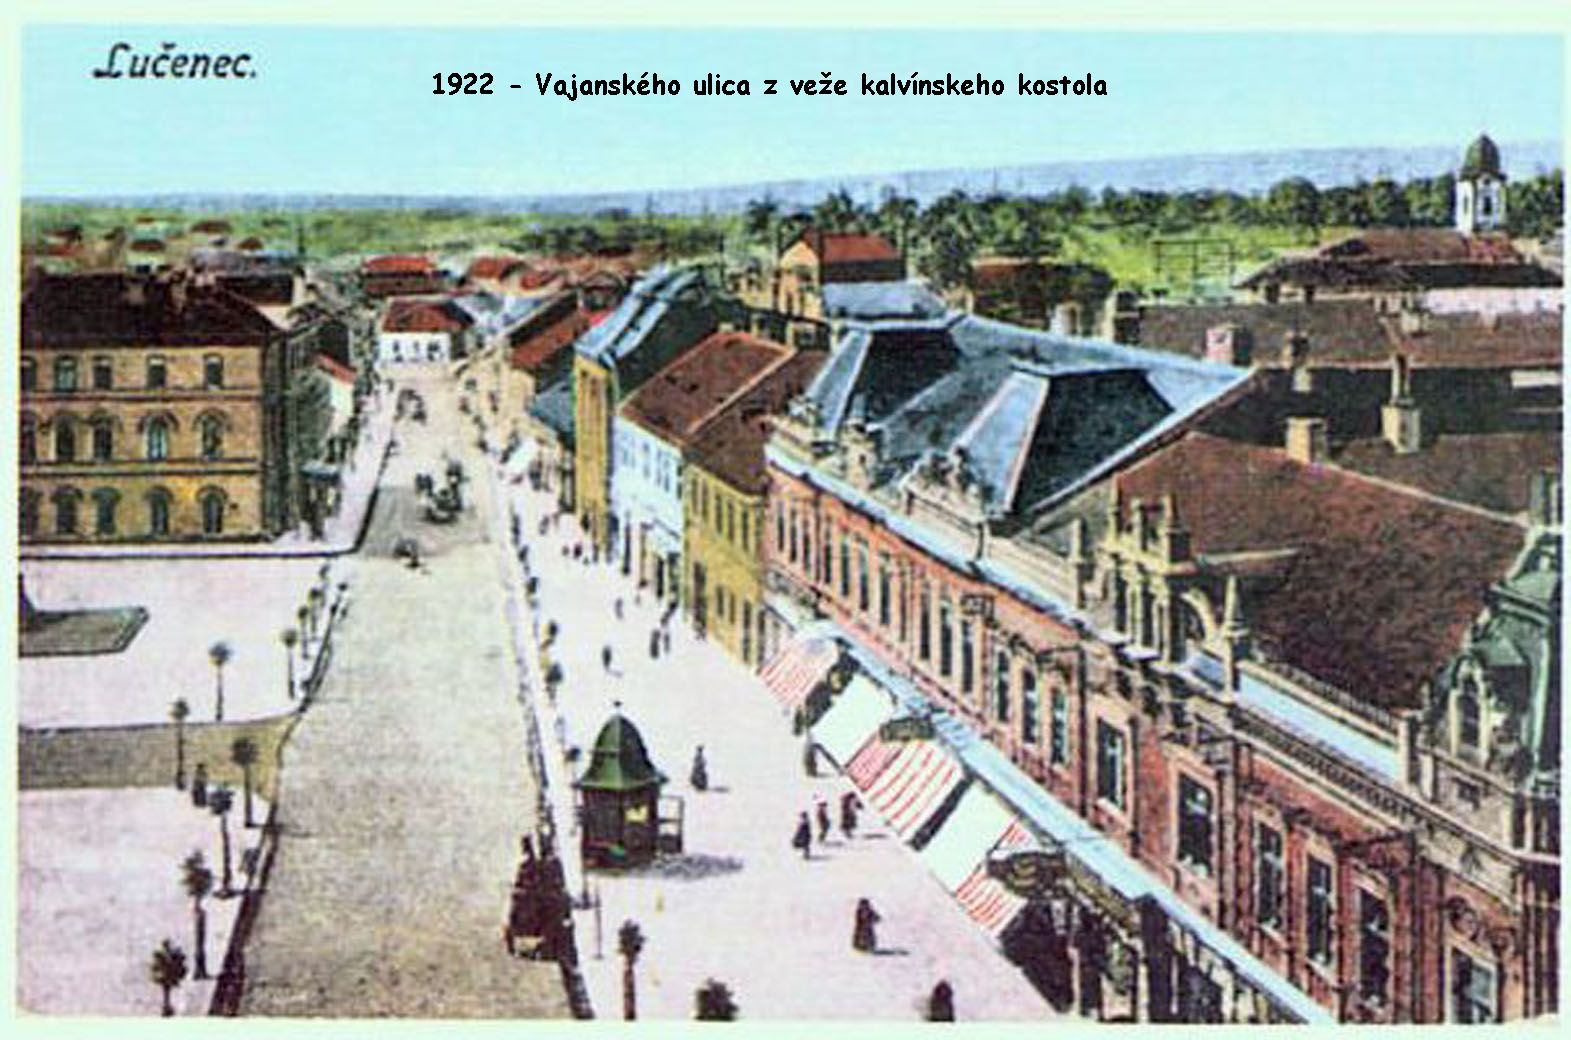 1922 - Vajanského ulica z veže kalvínskeho kostola po úprave